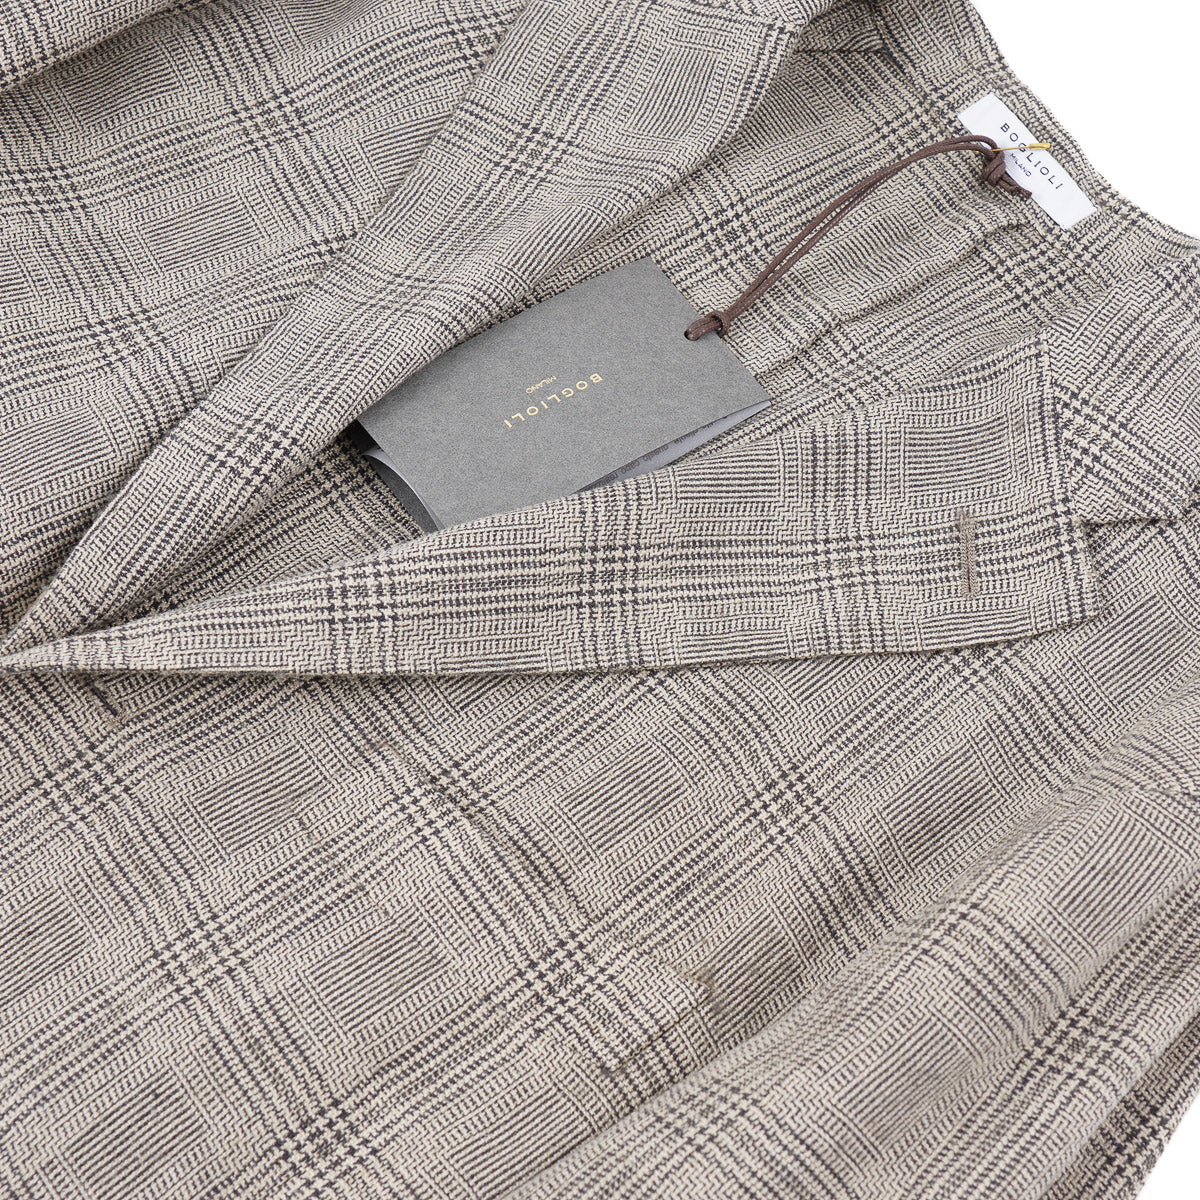 Boglioli Silk-Linen-Wool 'K Jacket' Sport Coat - Top Shelf Apparel